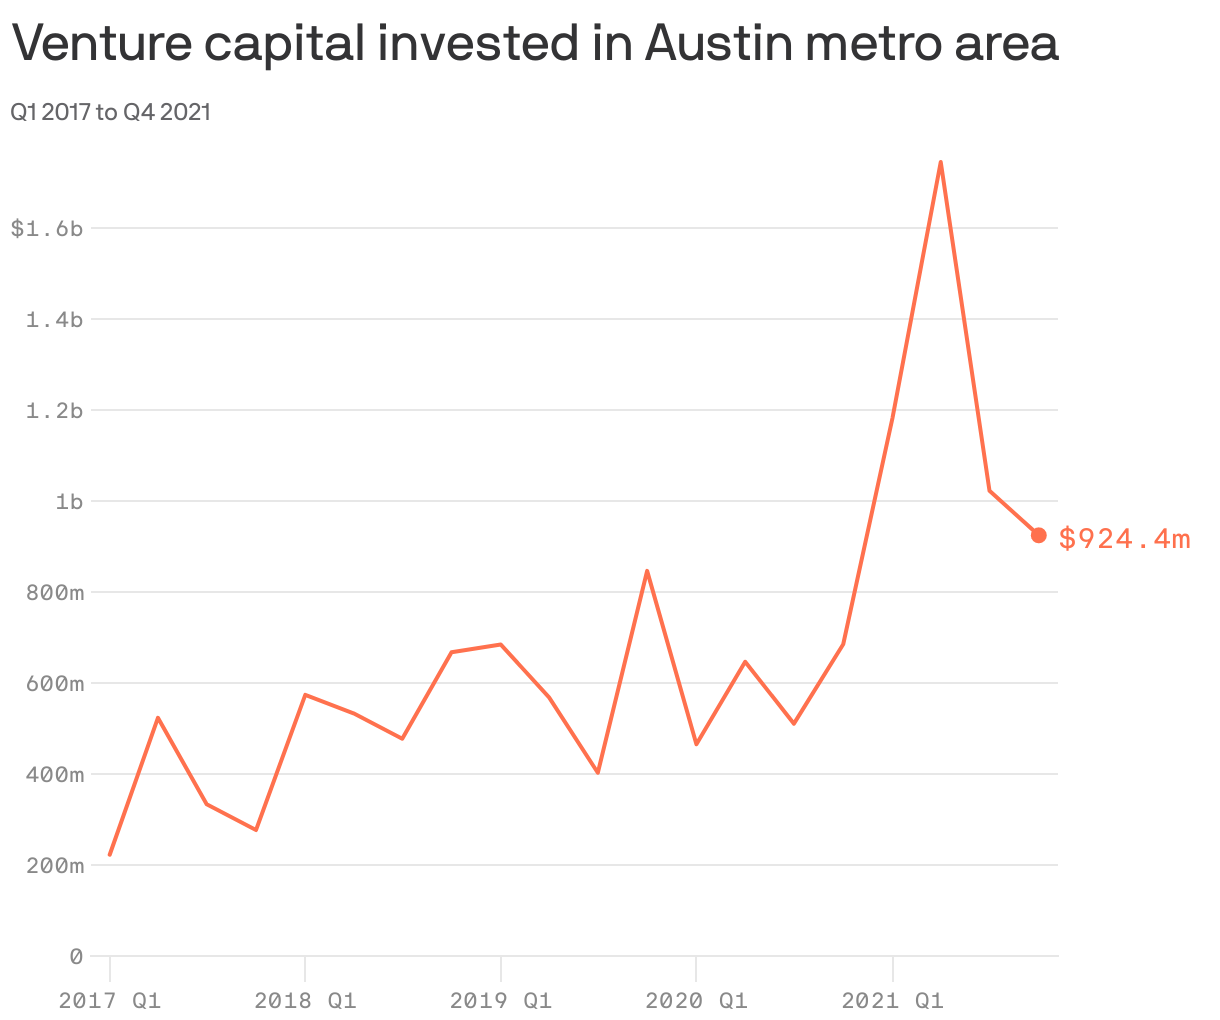 Venture capital invested in Austin metro area